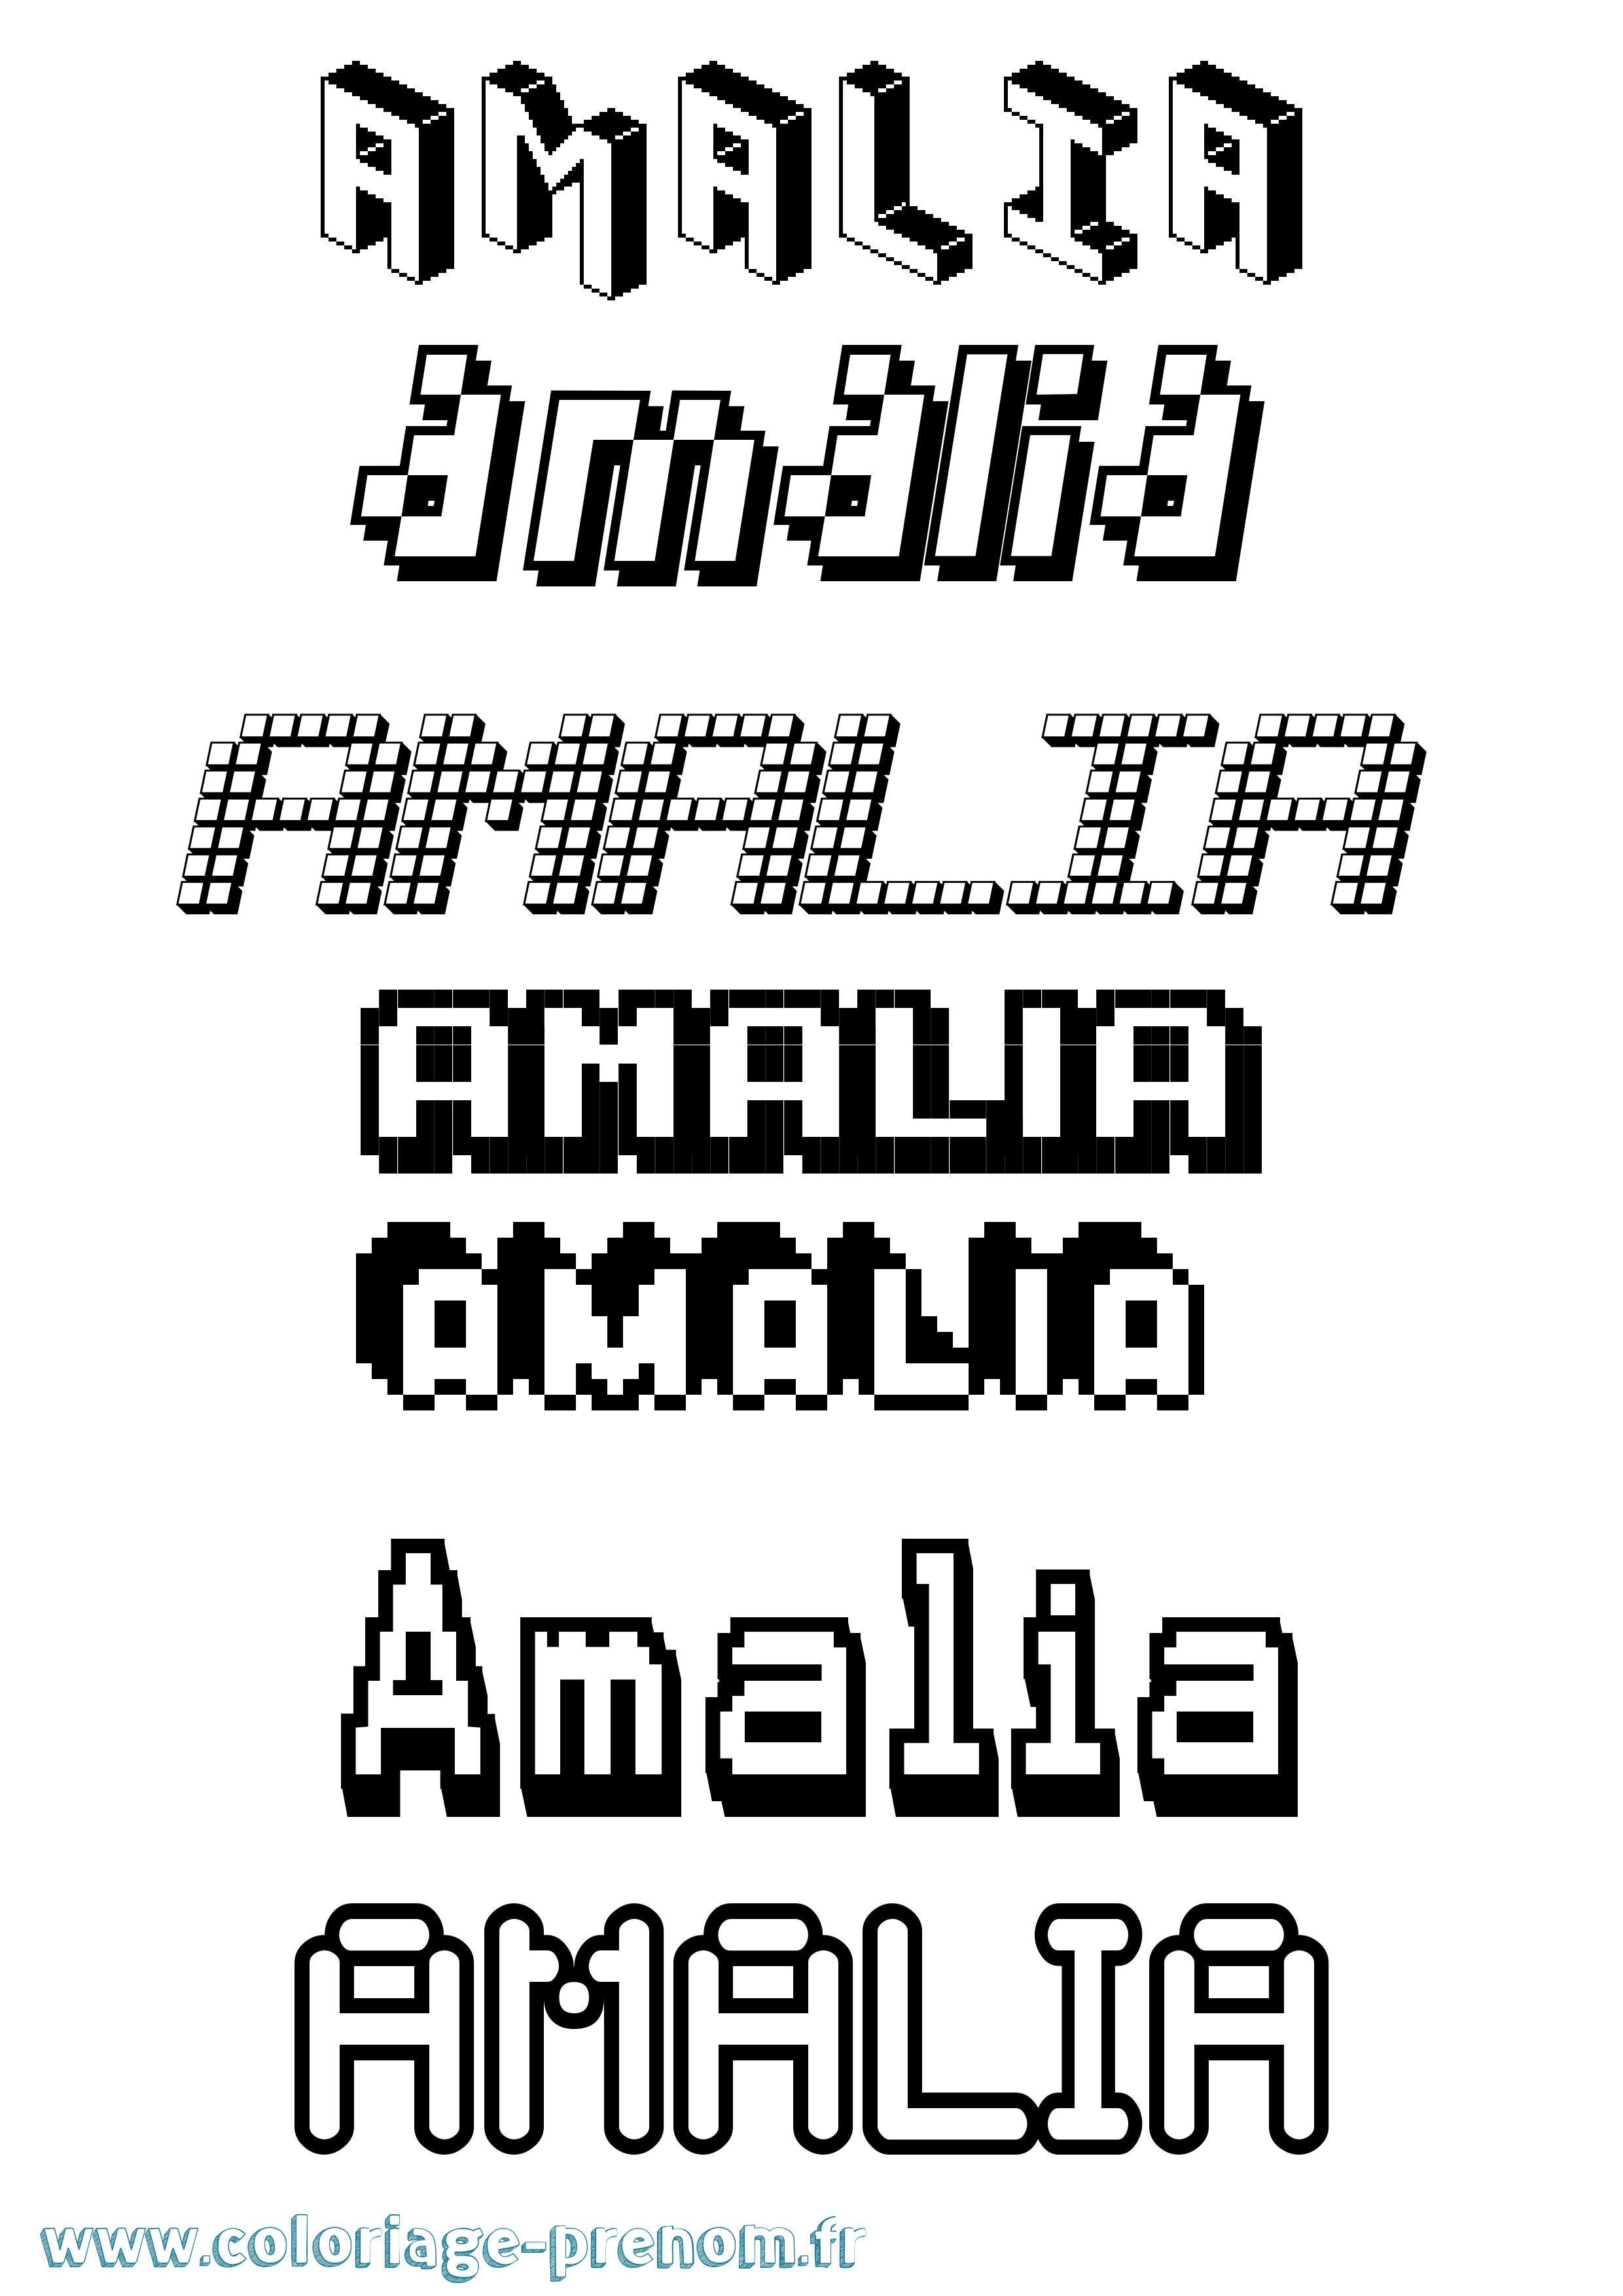 Coloriage prénom Amalia